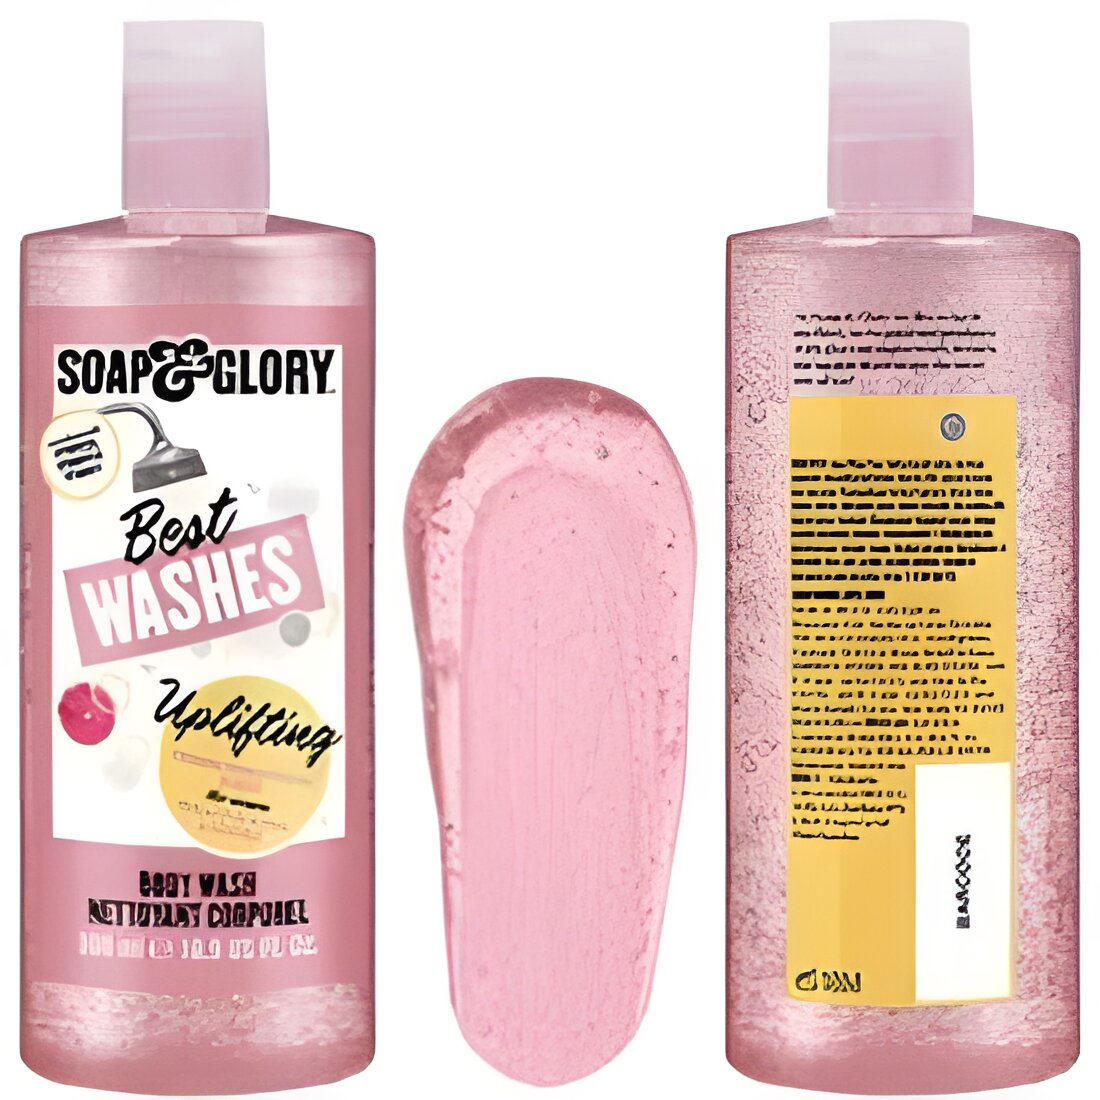 Free Soap & Glory Best Wash Uplifting Body Wash